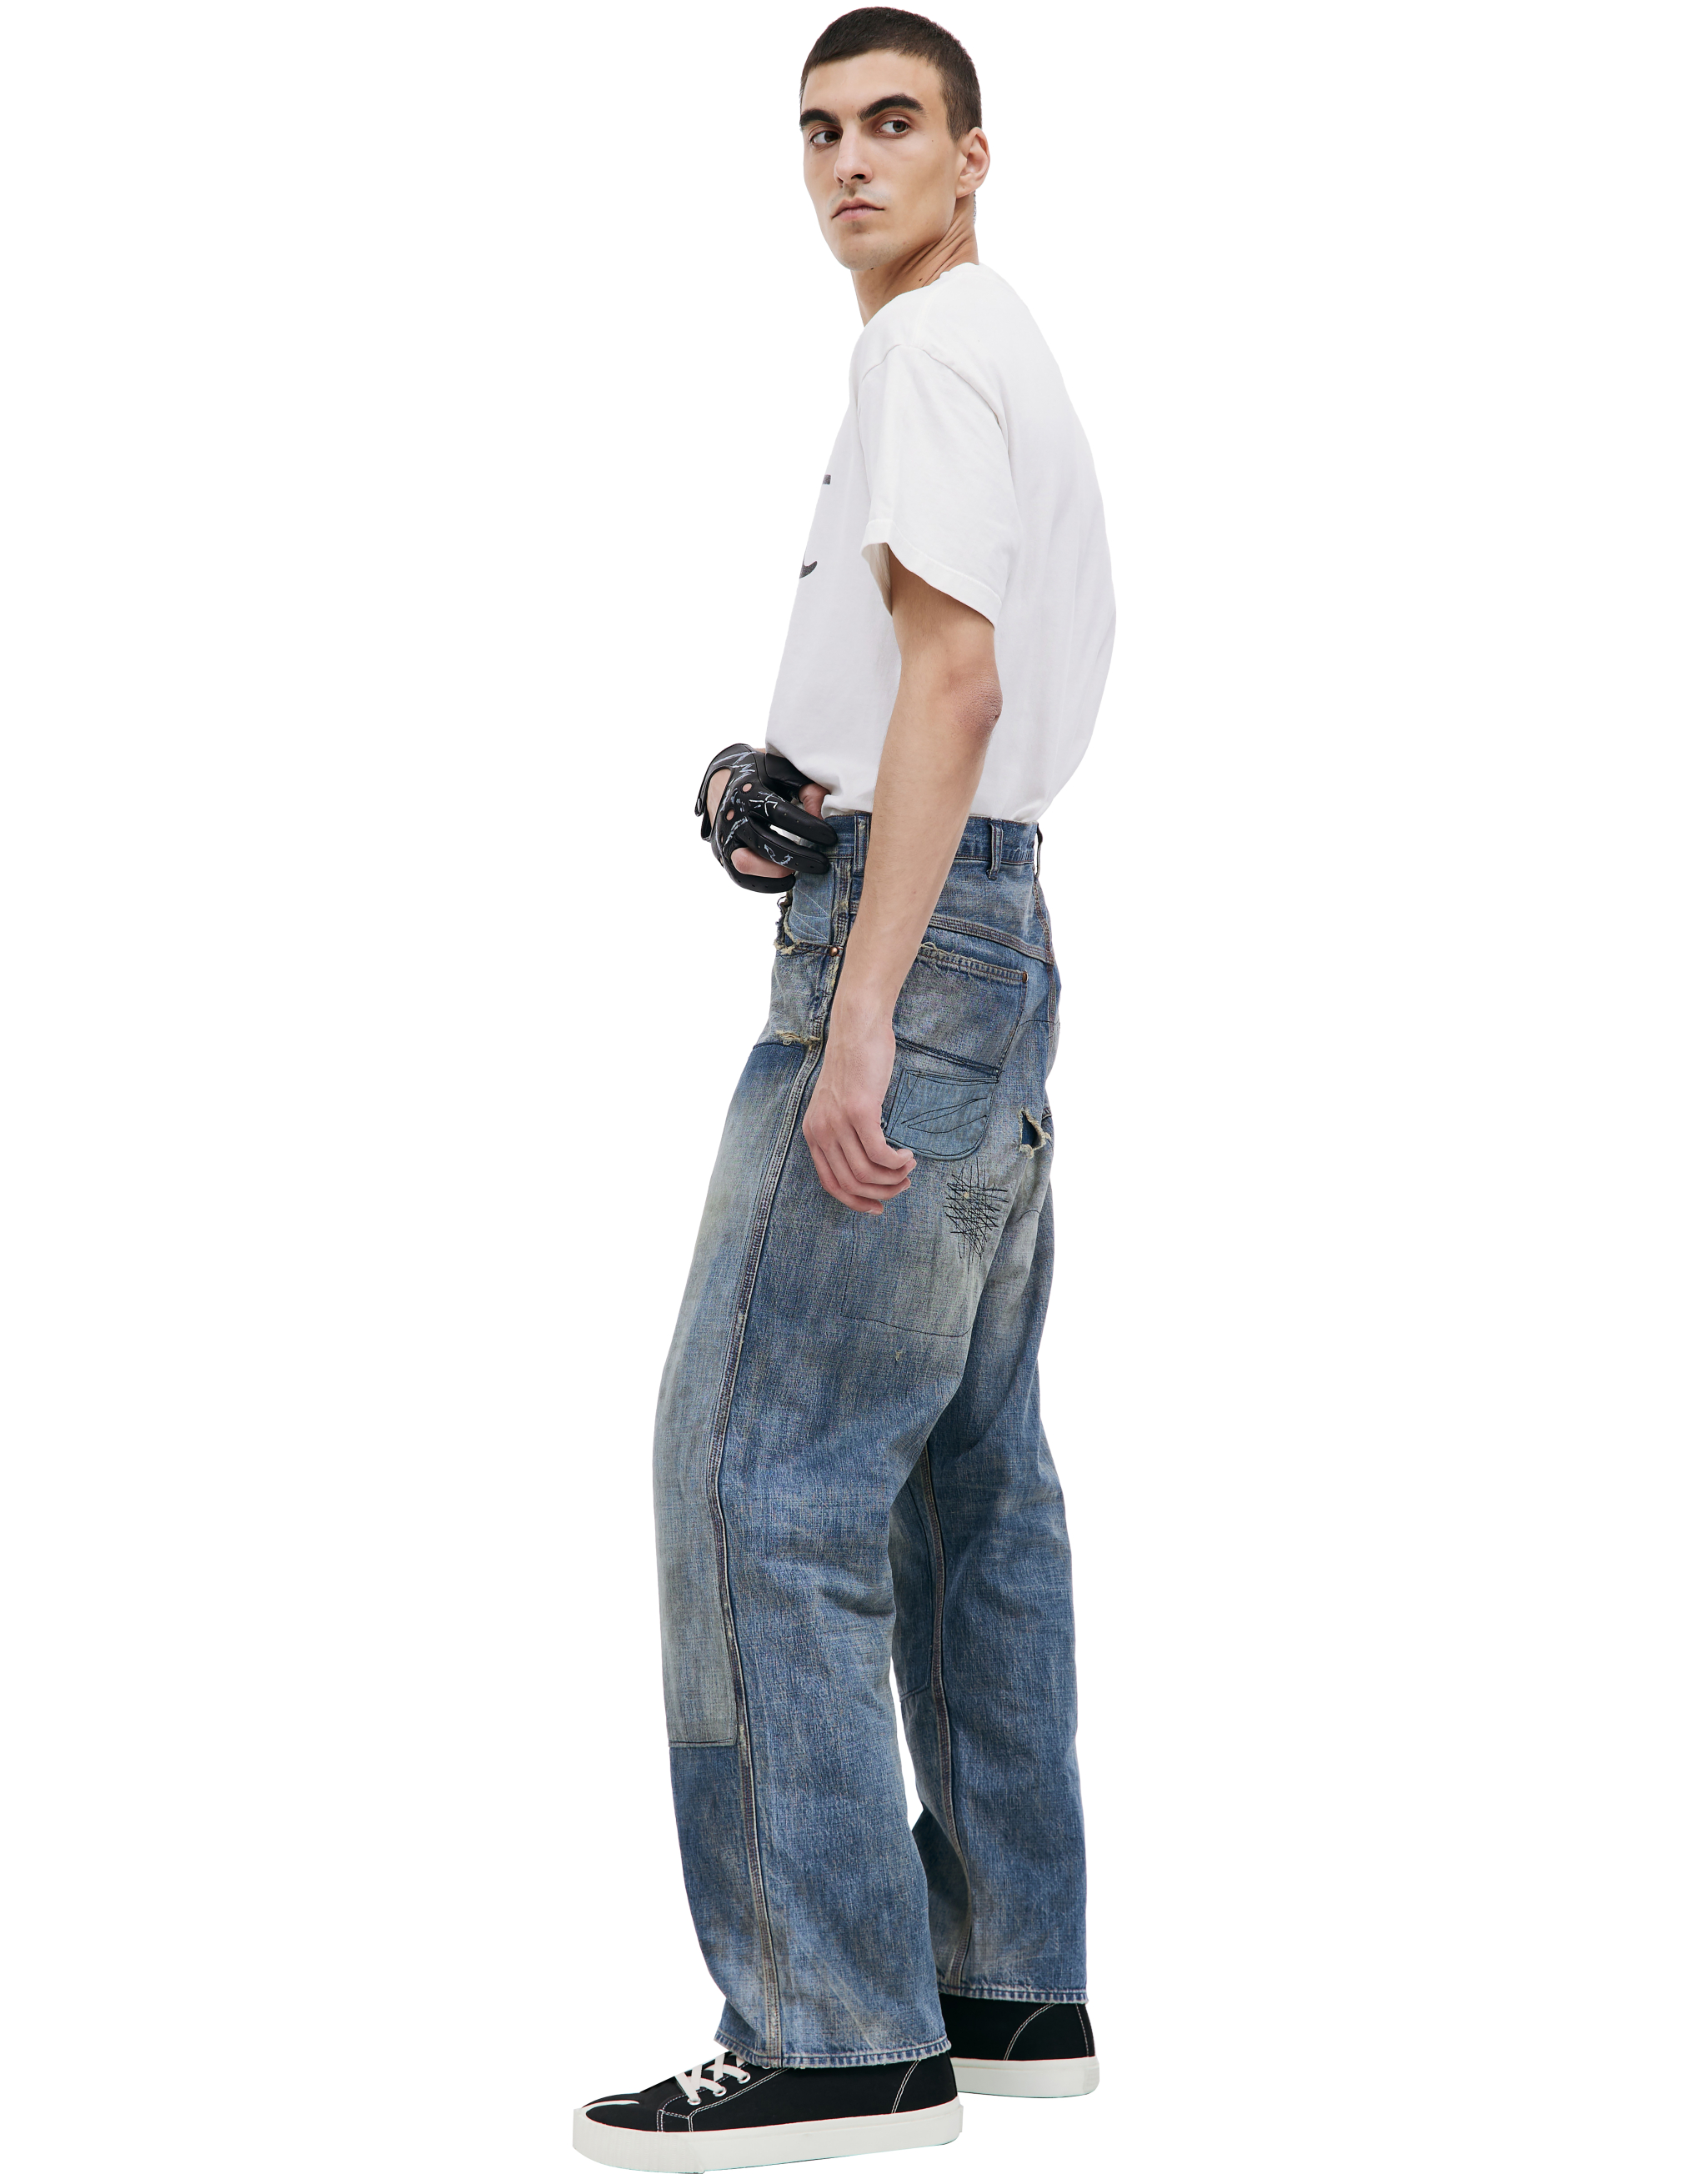 Прямые джинсы с патчами Saint Michael SM-A23-0000-038, размер M - фото 2